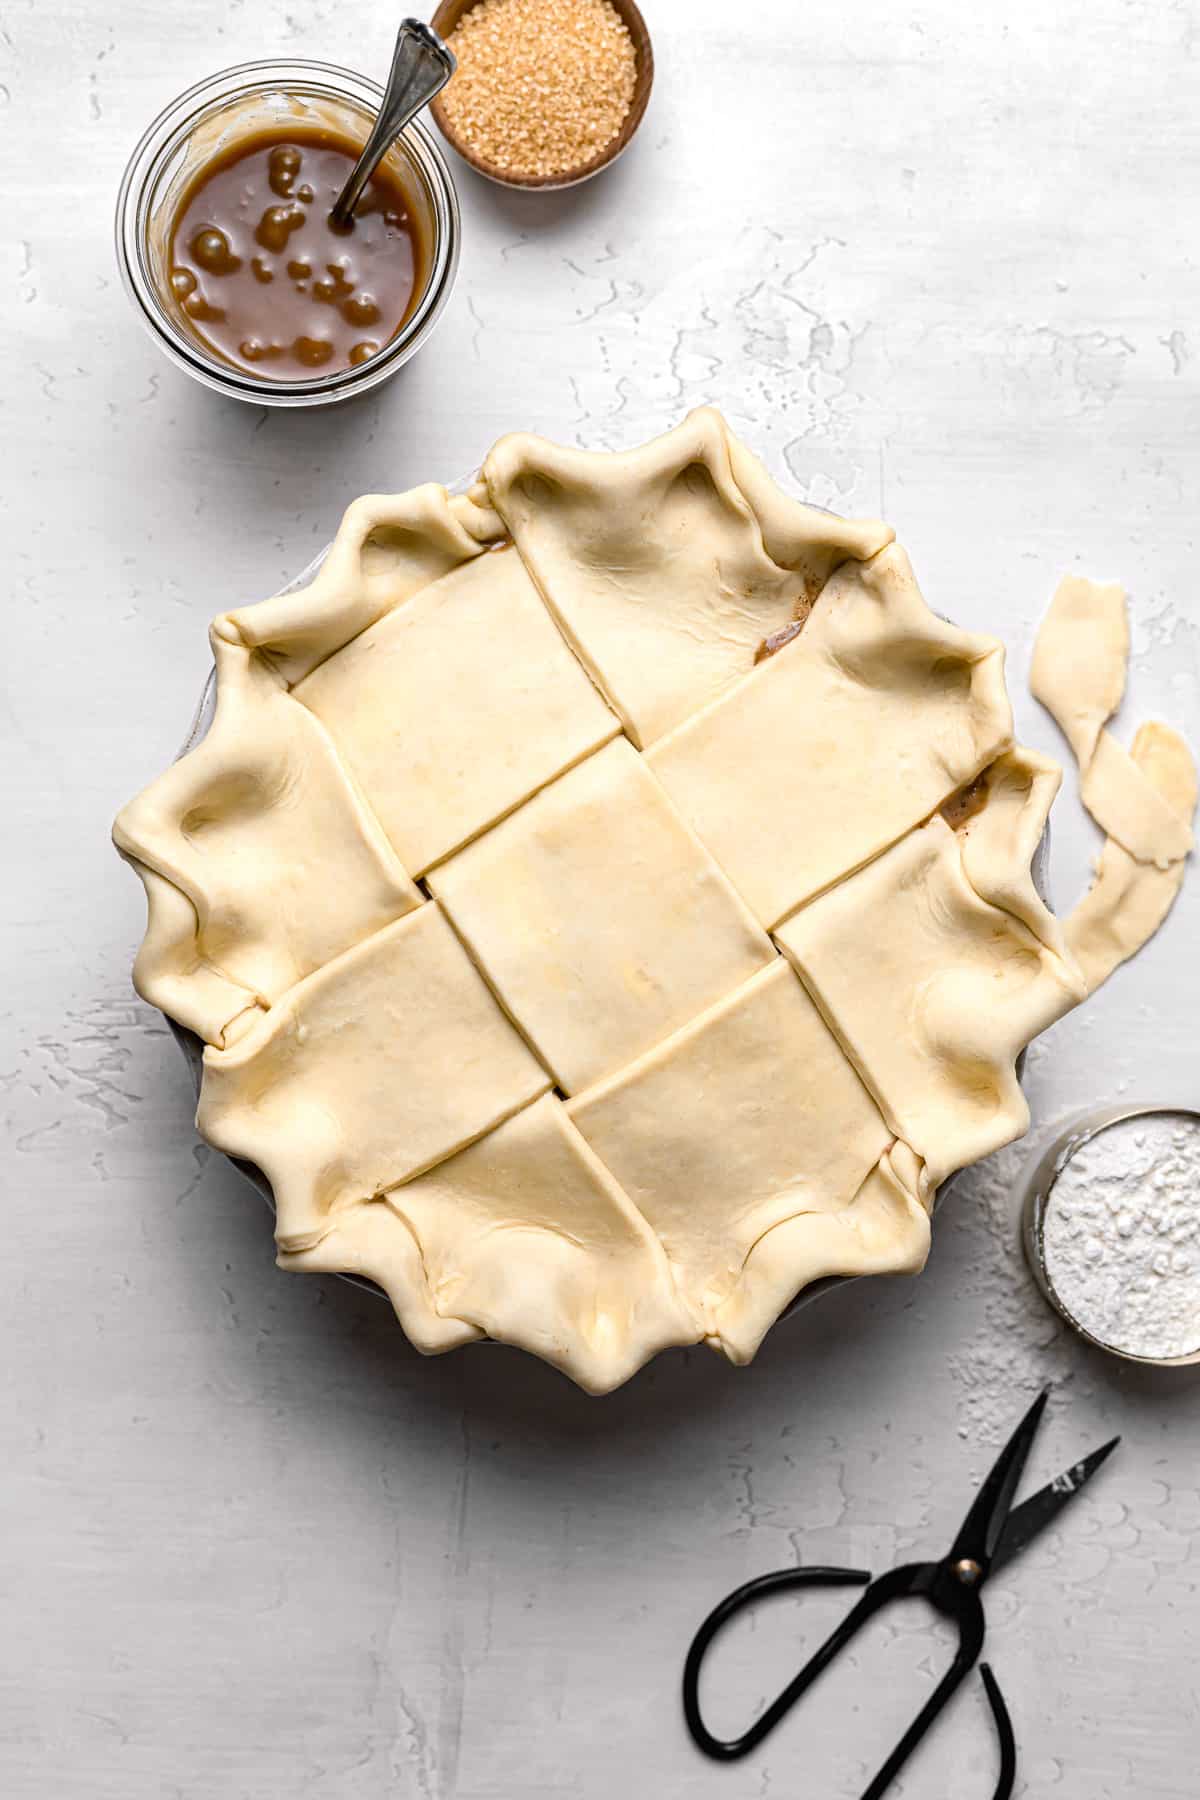 unbaked apple pie with lattice top.